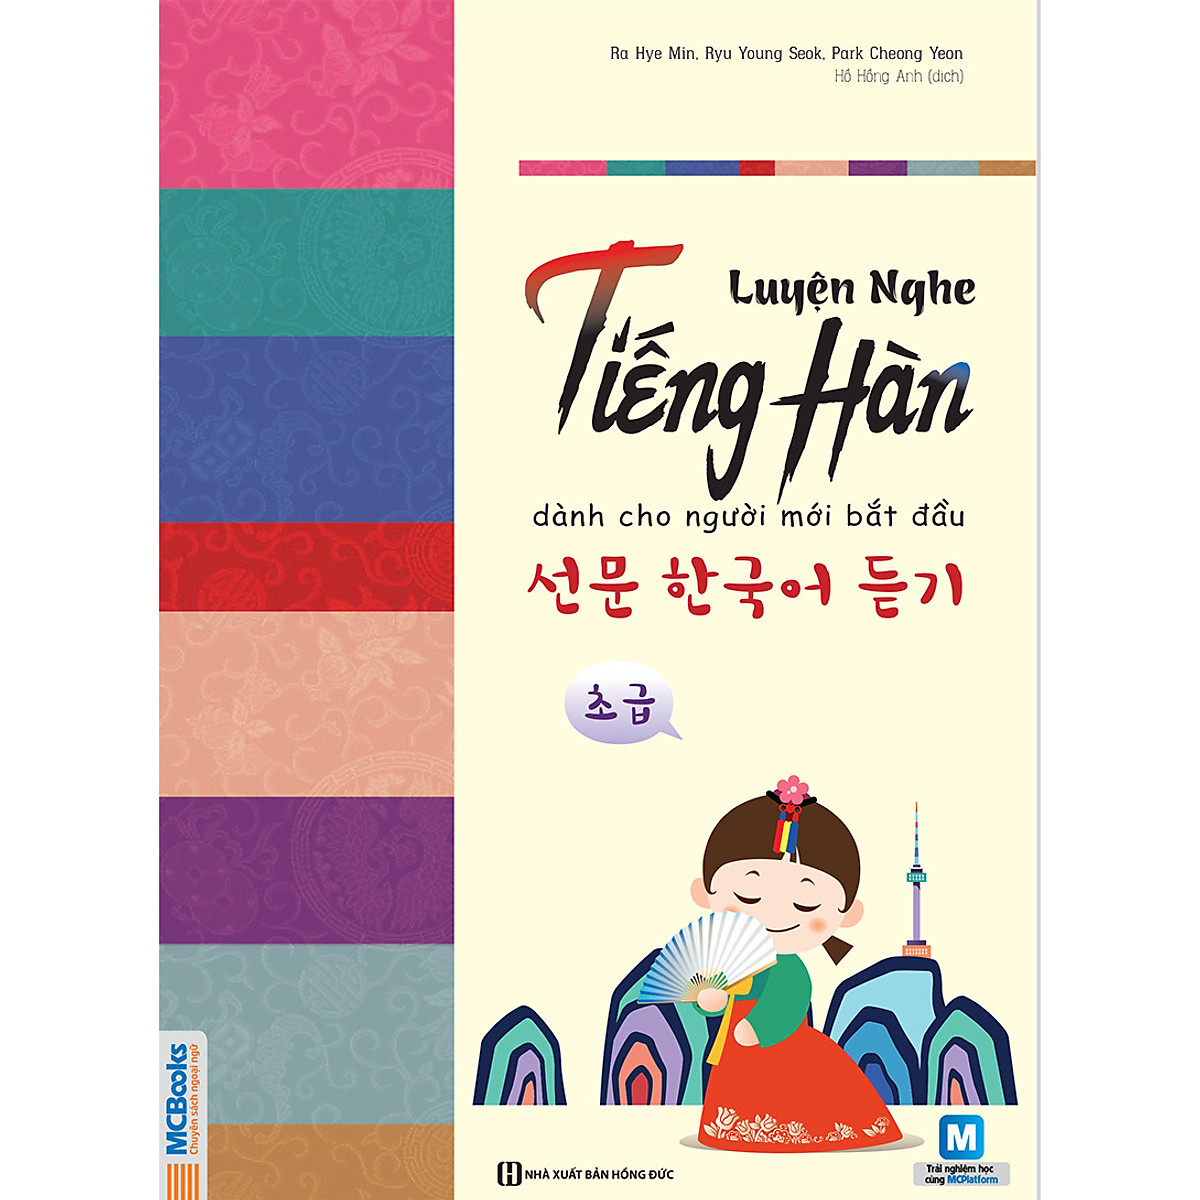 Luyện Nghe Tiếng Hàn Cho Người Mới Bắt Đầu (Học Kèm App MCBooks)